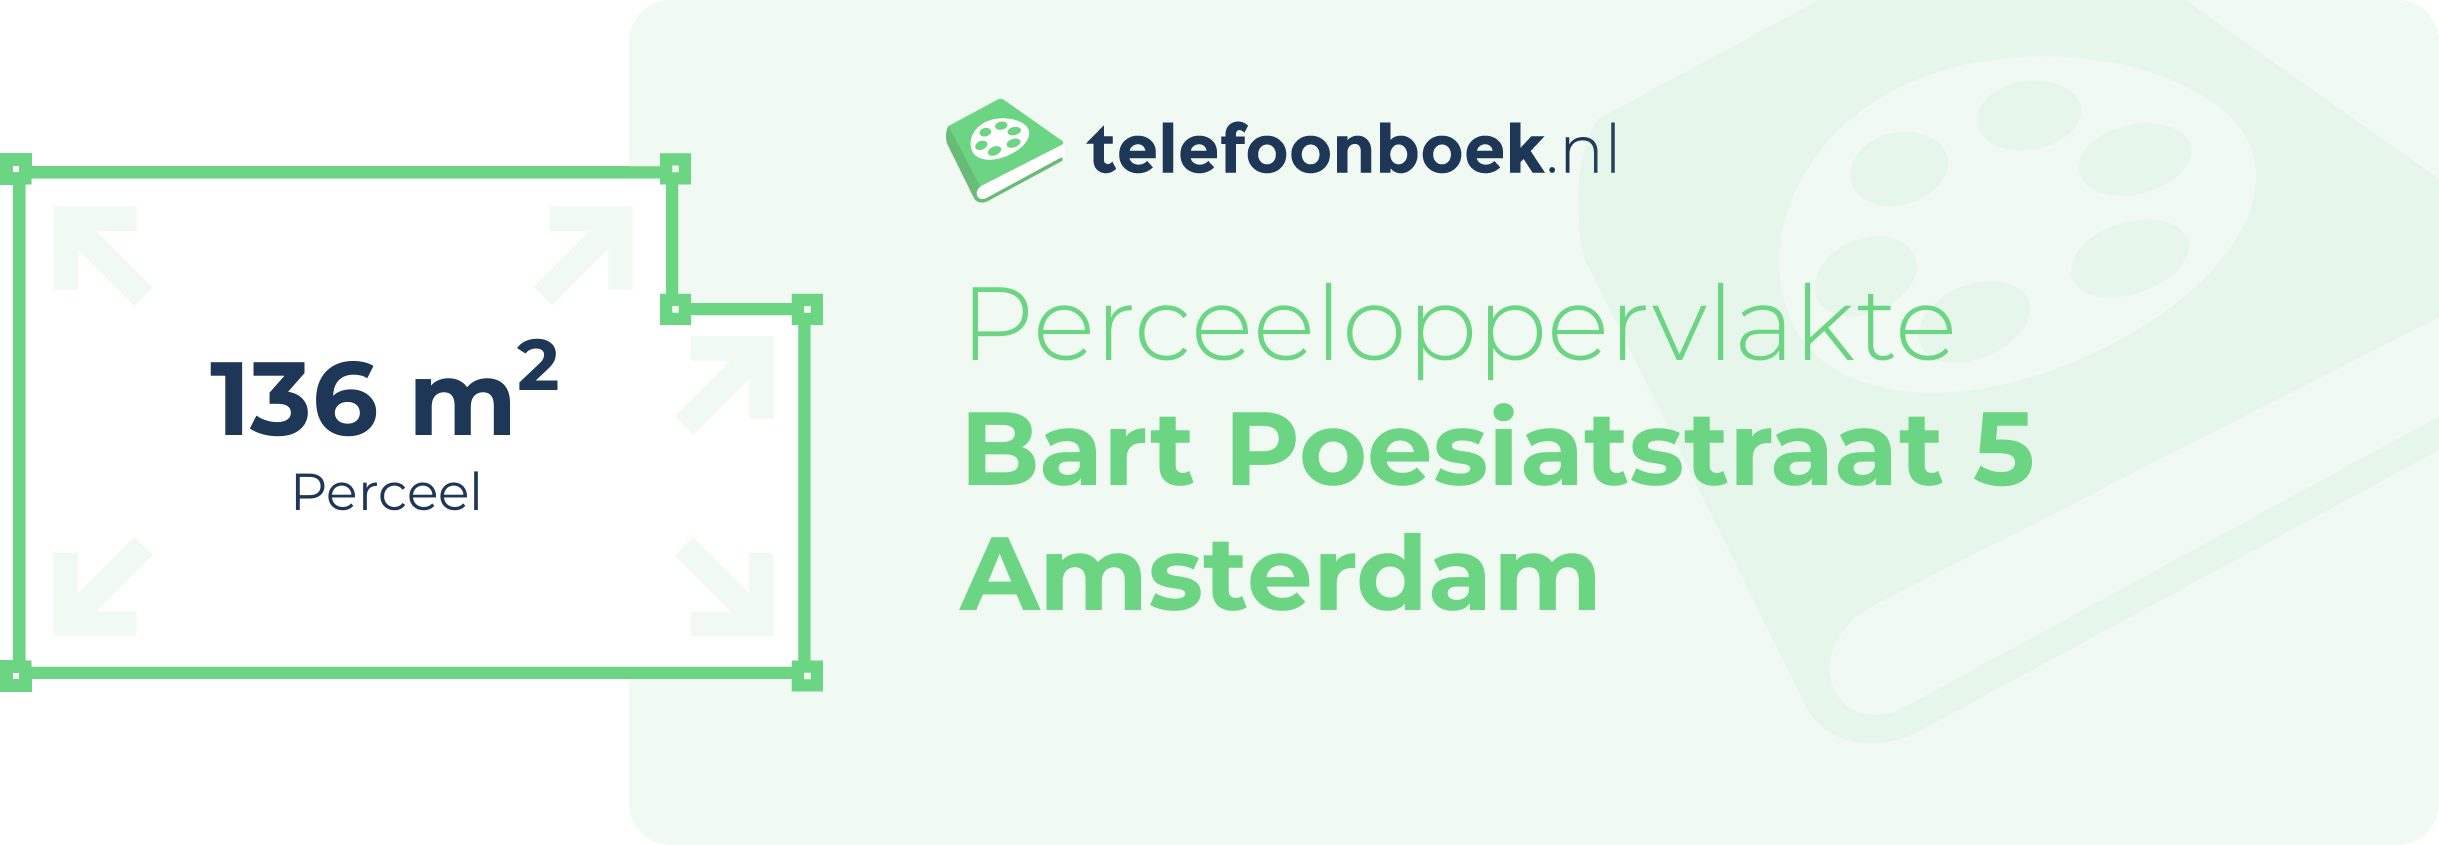 Perceeloppervlakte Bart Poesiatstraat 5 Amsterdam